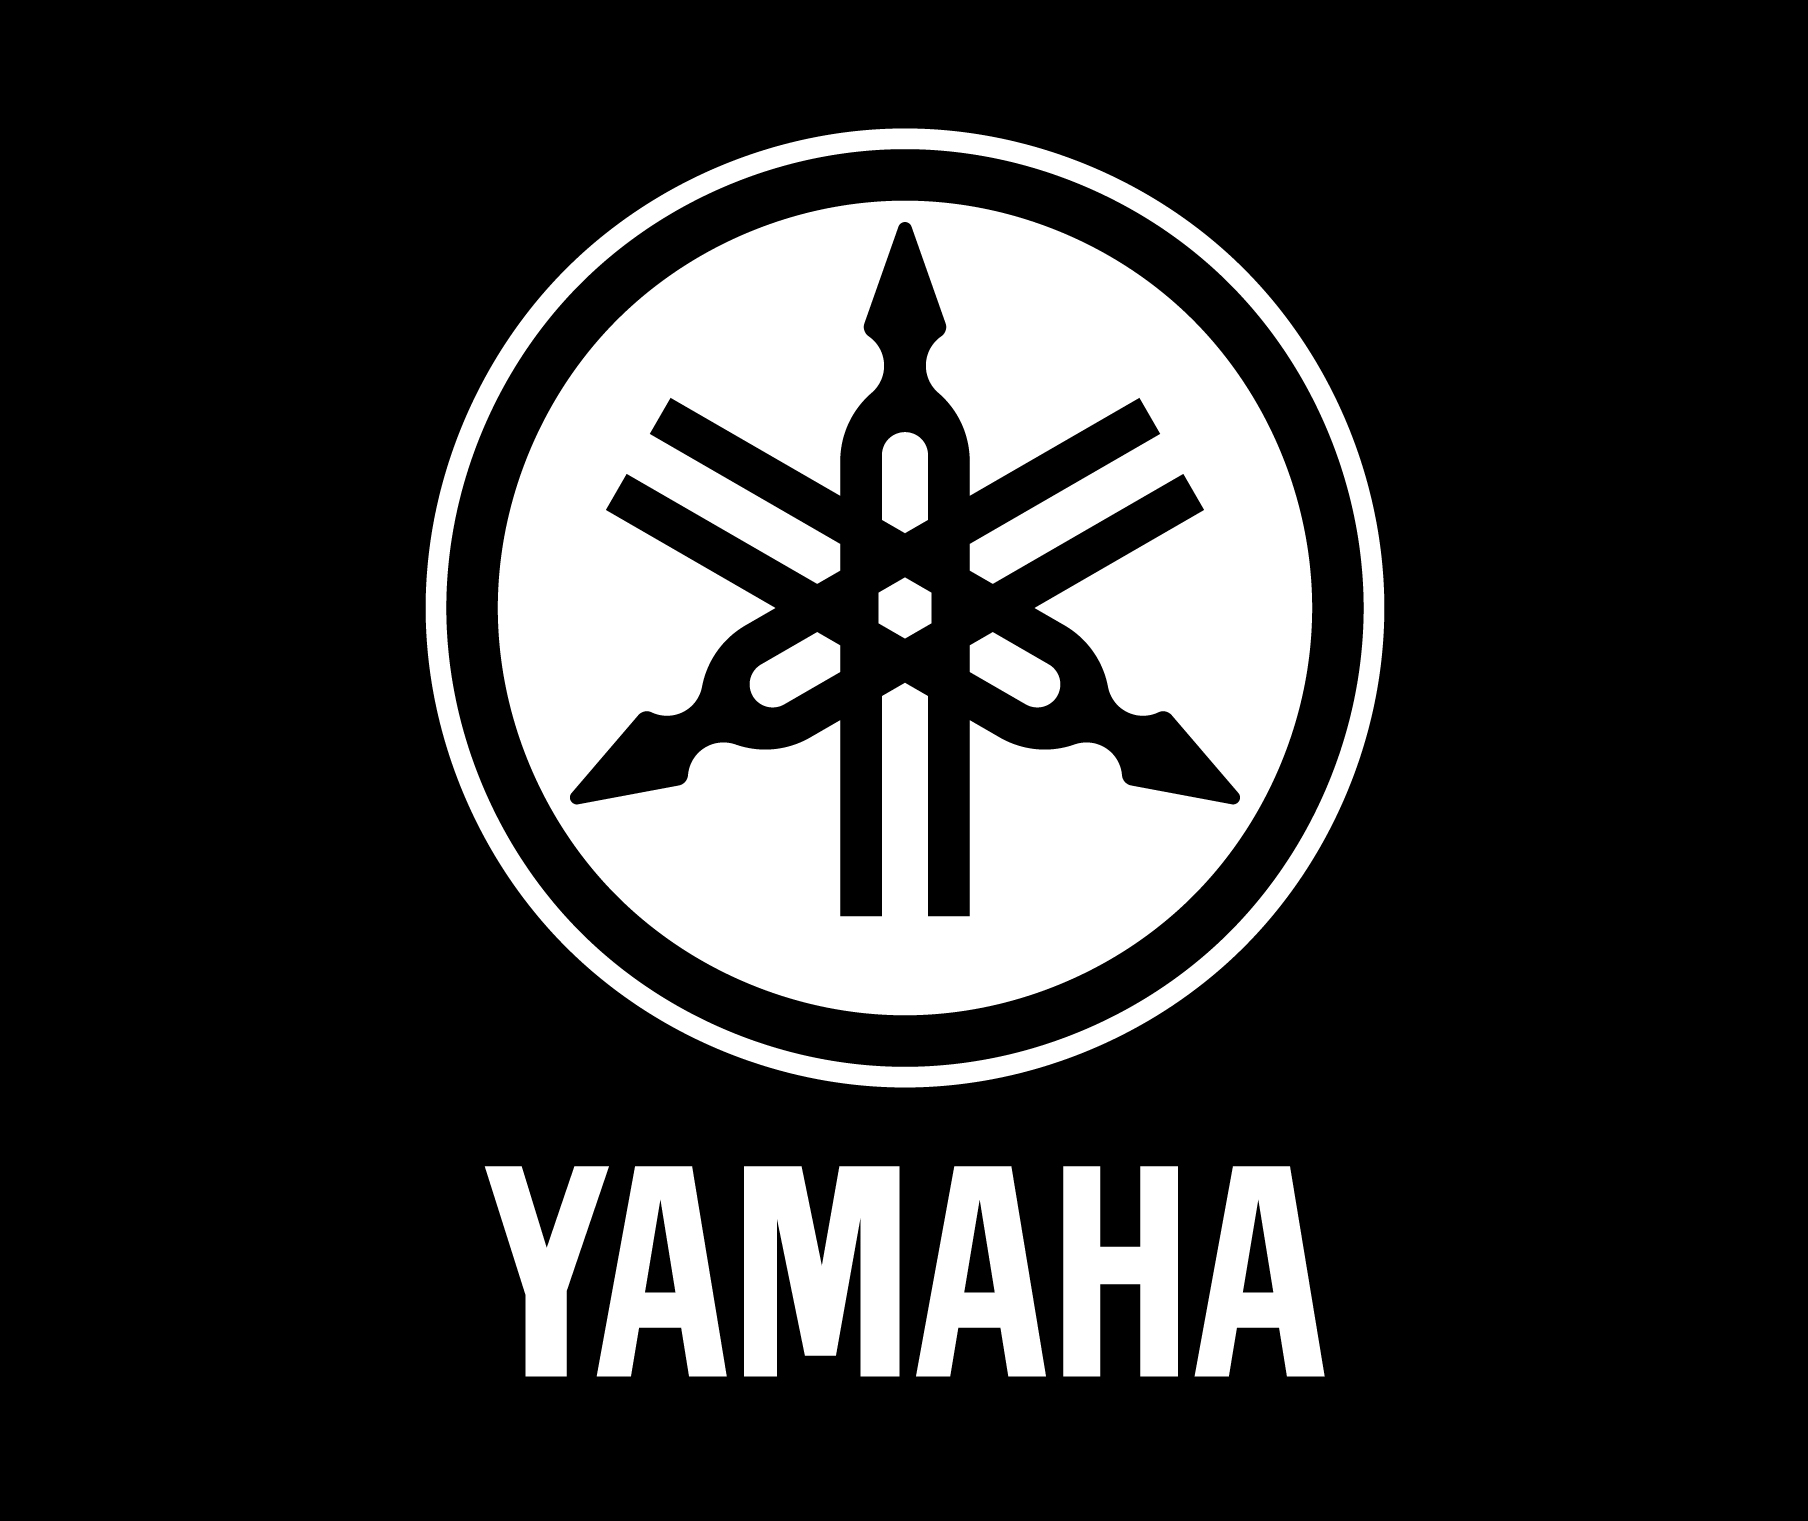 yamaha-logo-black.jpg